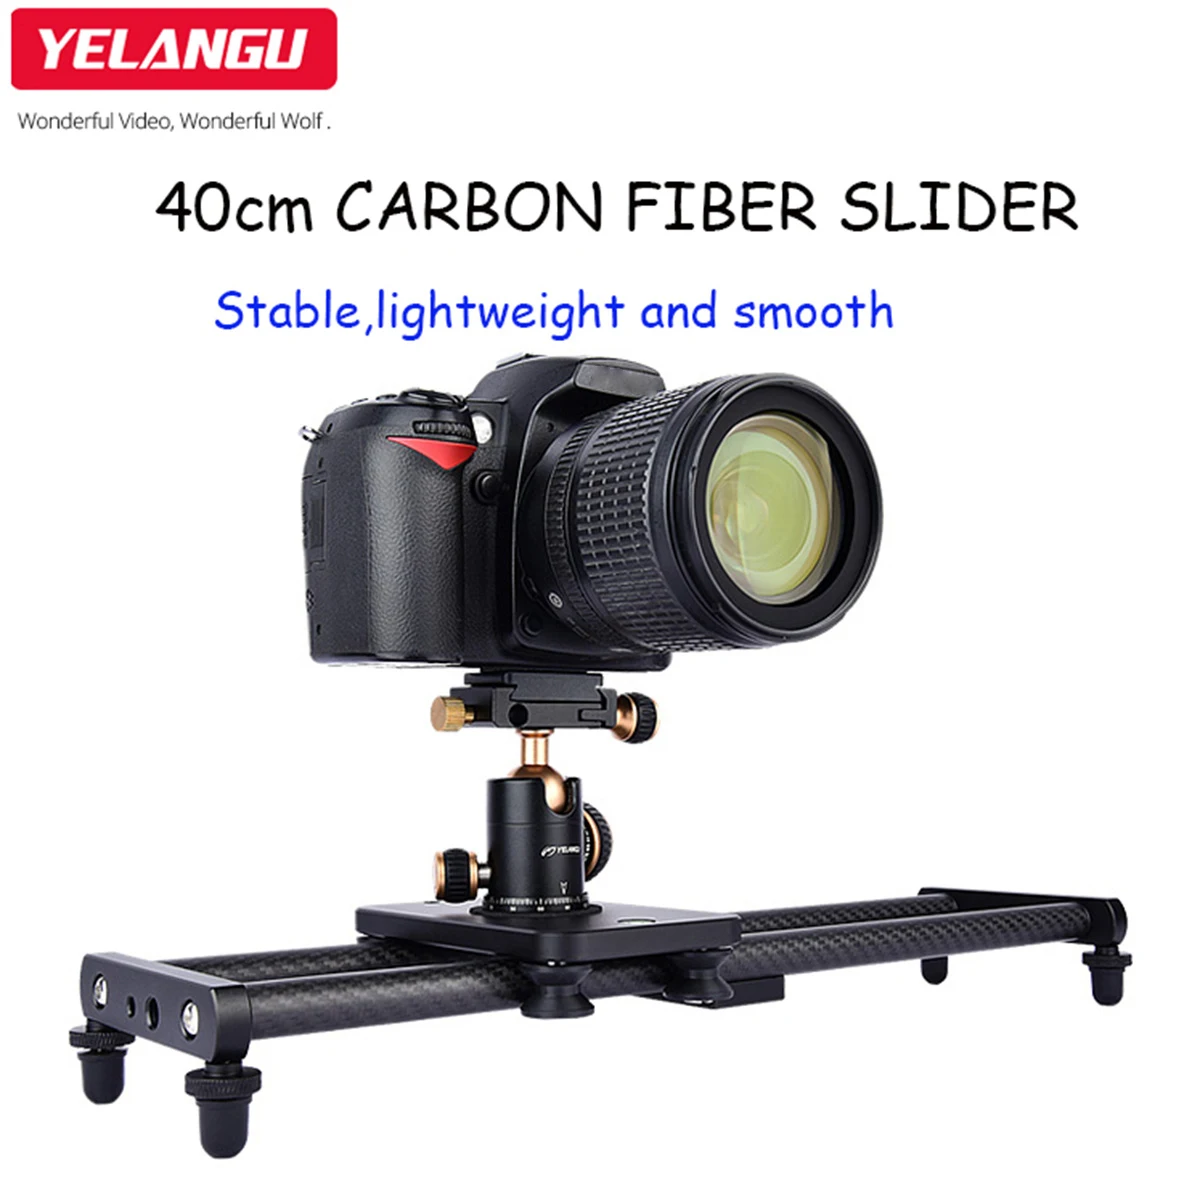 Carbon Fiber Video Stabilizer Rail, Carbon Fiber Track Slider